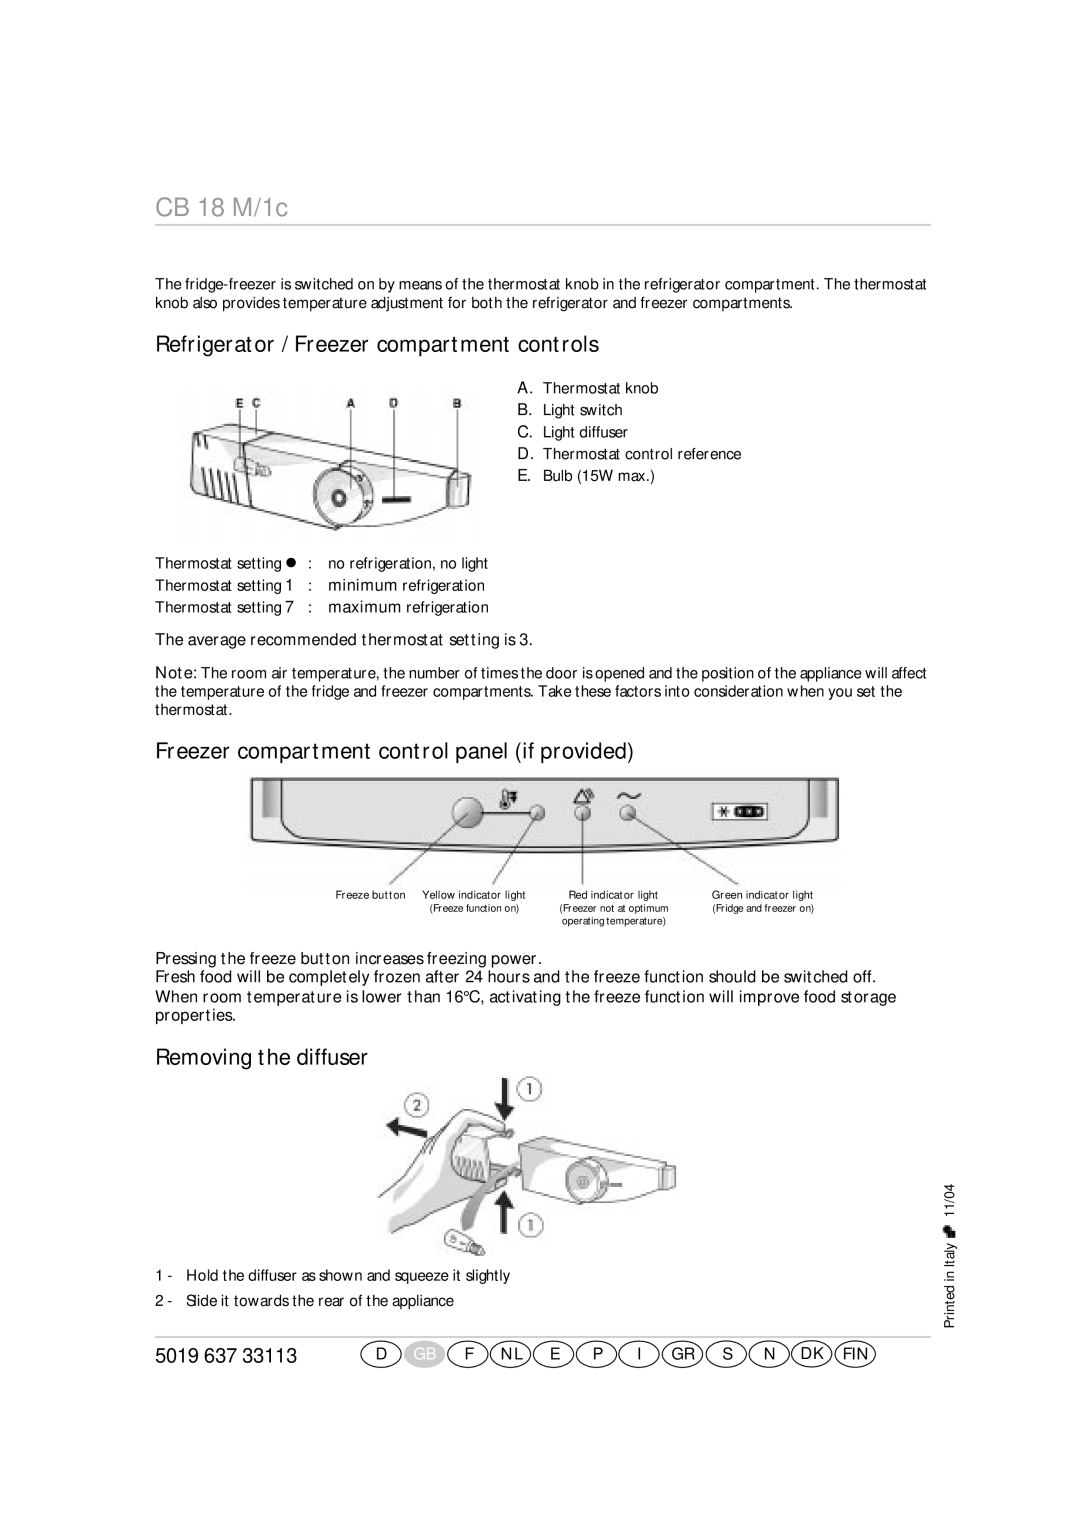 Smeg CR324A Refrigerator / Freezer compartment controls, Freezer compartment control panel if provided, CB 18 M/1c, 5019 